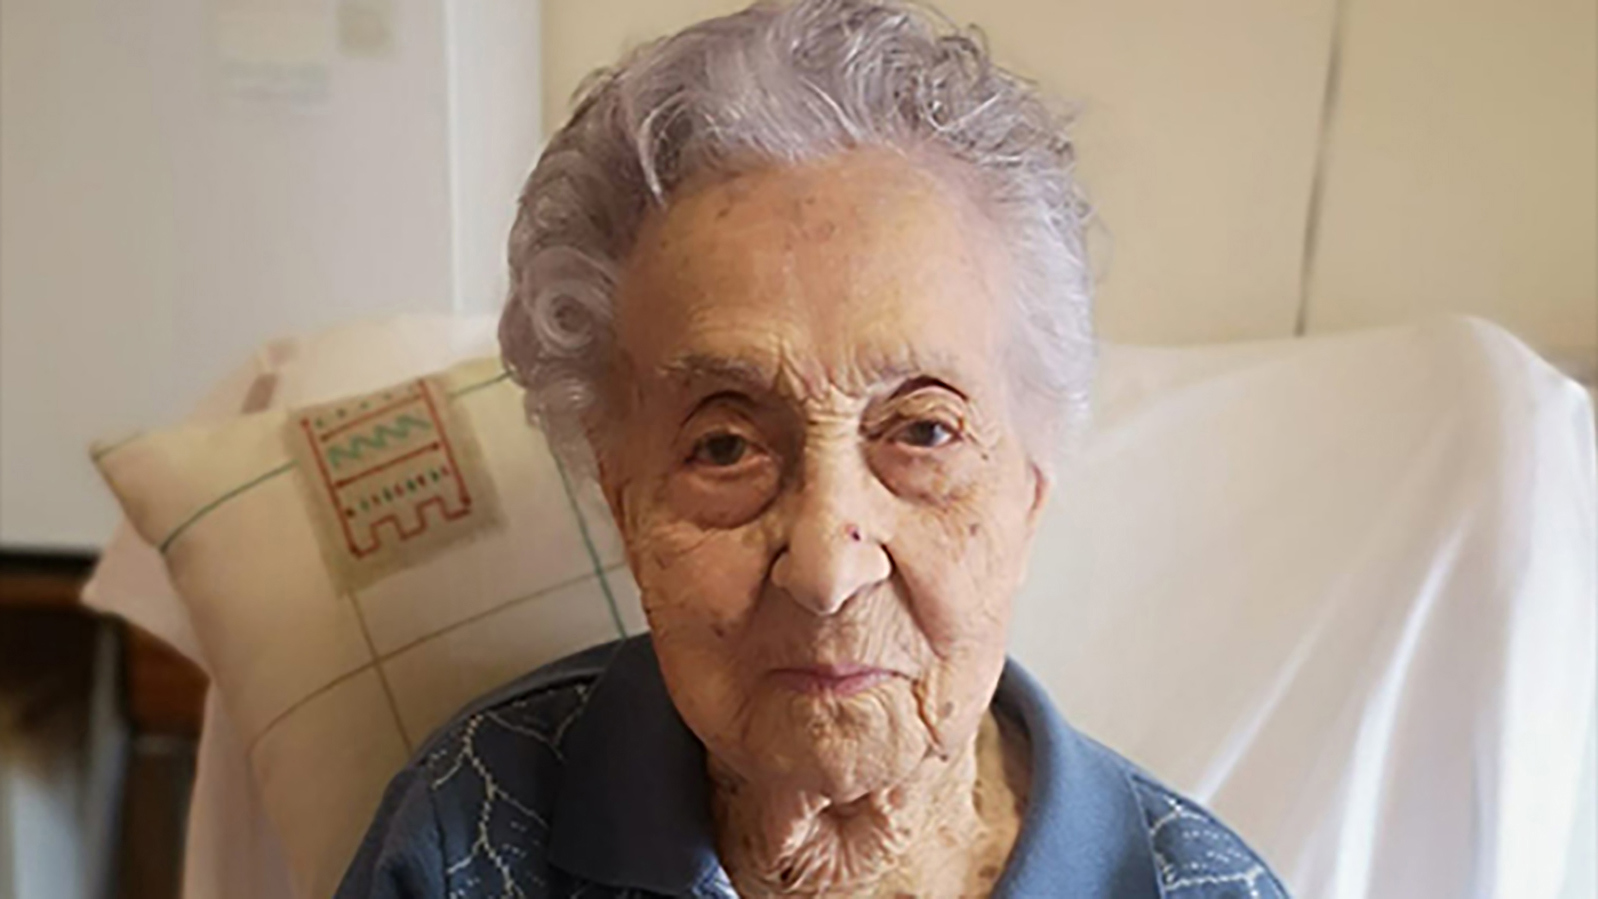 Maria Branyas Morera, nacida en Estados Unidos, ha sido nombrada la persona más anciana del mundo por Guinness World Records (GWR), luego de la muerte de la monja francesa, la hermana André, a principios de este mes a la edad de 118 años.